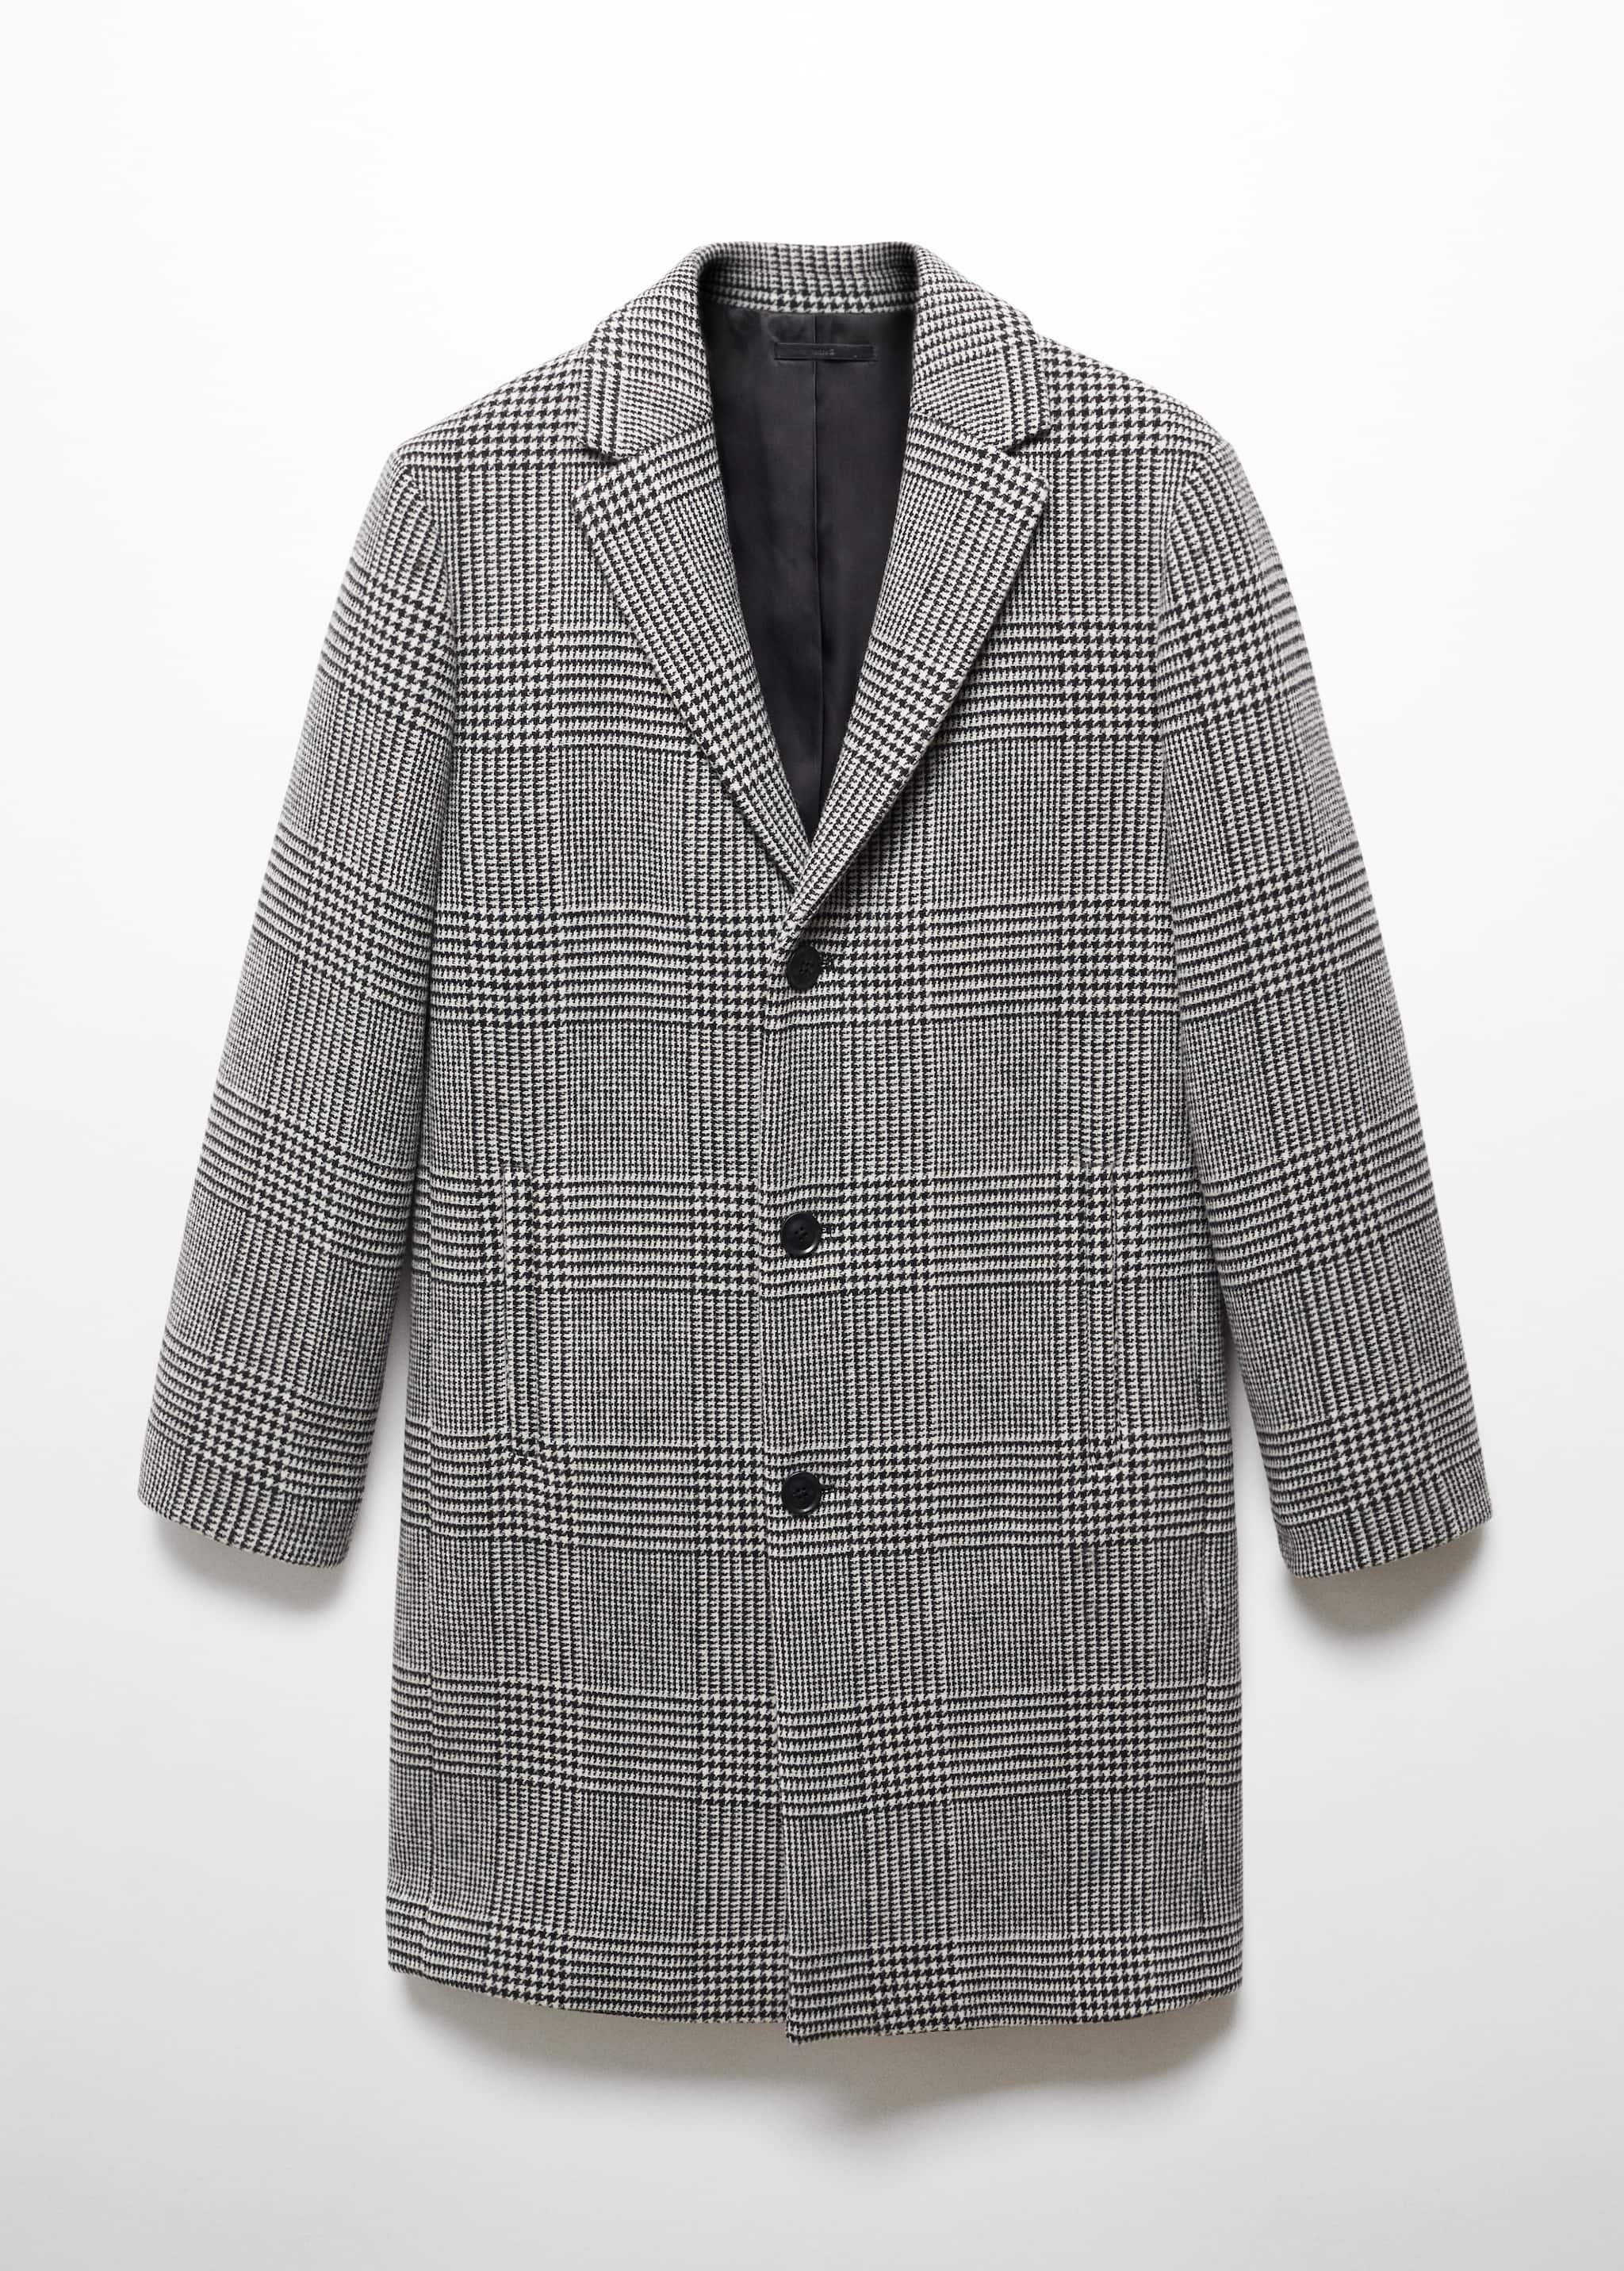 Пальто из шерсти принц Уэльский - Изделие без модели